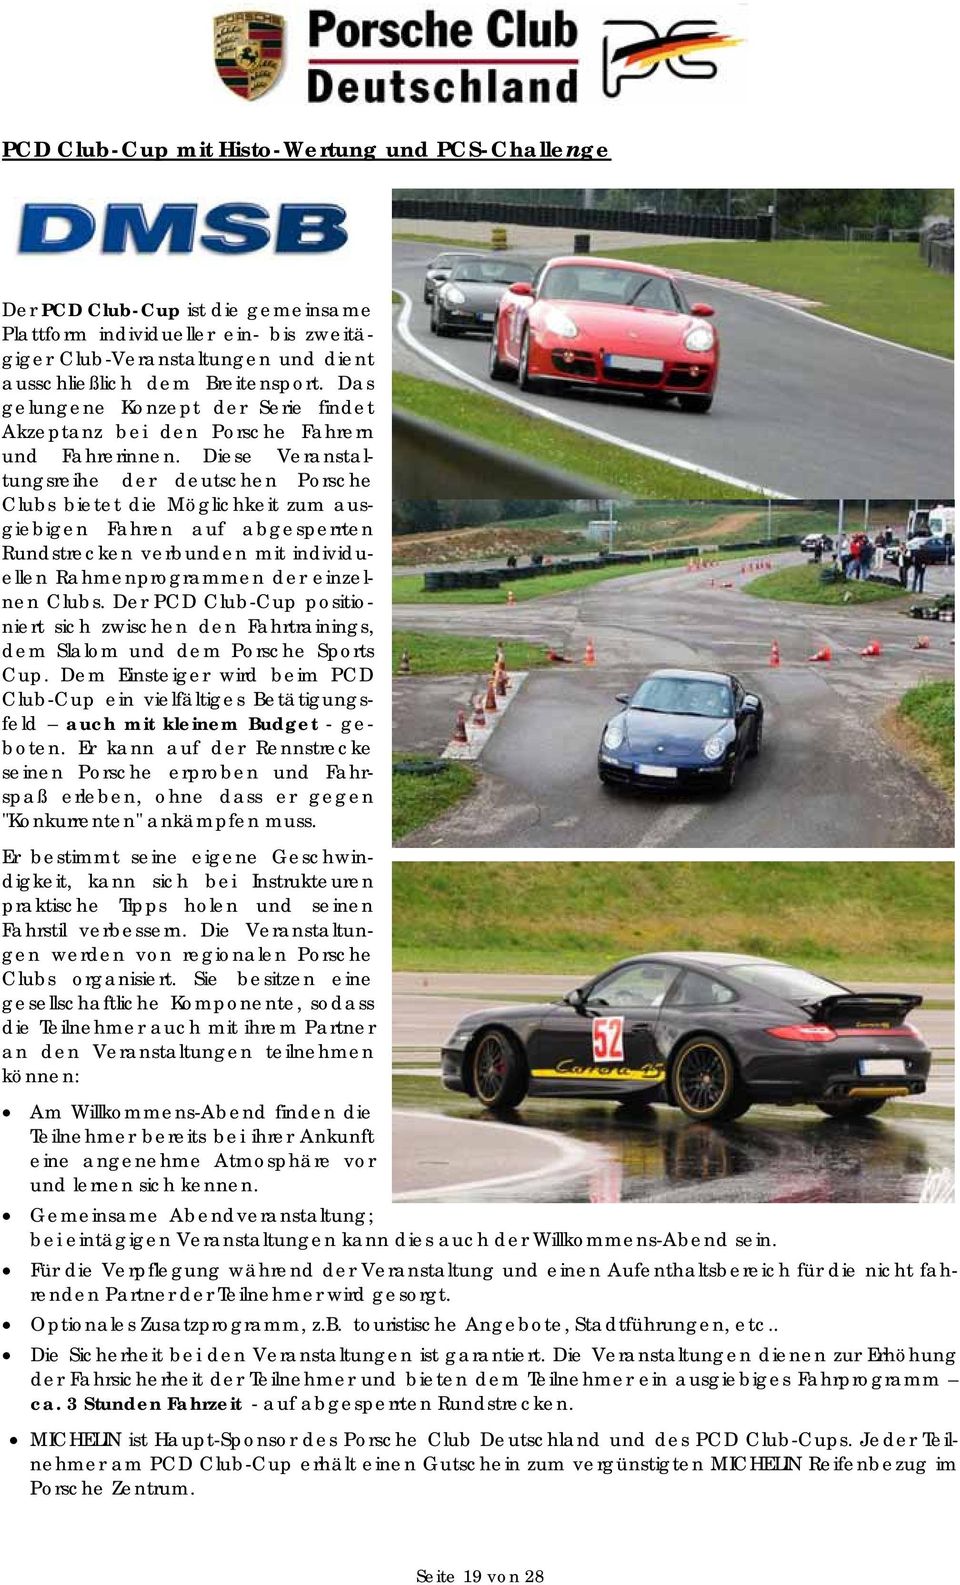 Diese Veranstaltungsreihe der deutschen Porsche Clubs bietet die Möglichkeit zum ausgiebigen Fahren auf abgesperrten Rundstrecken verbunden mit individuellen Rahmenprogrammen der einzelnen Clubs.